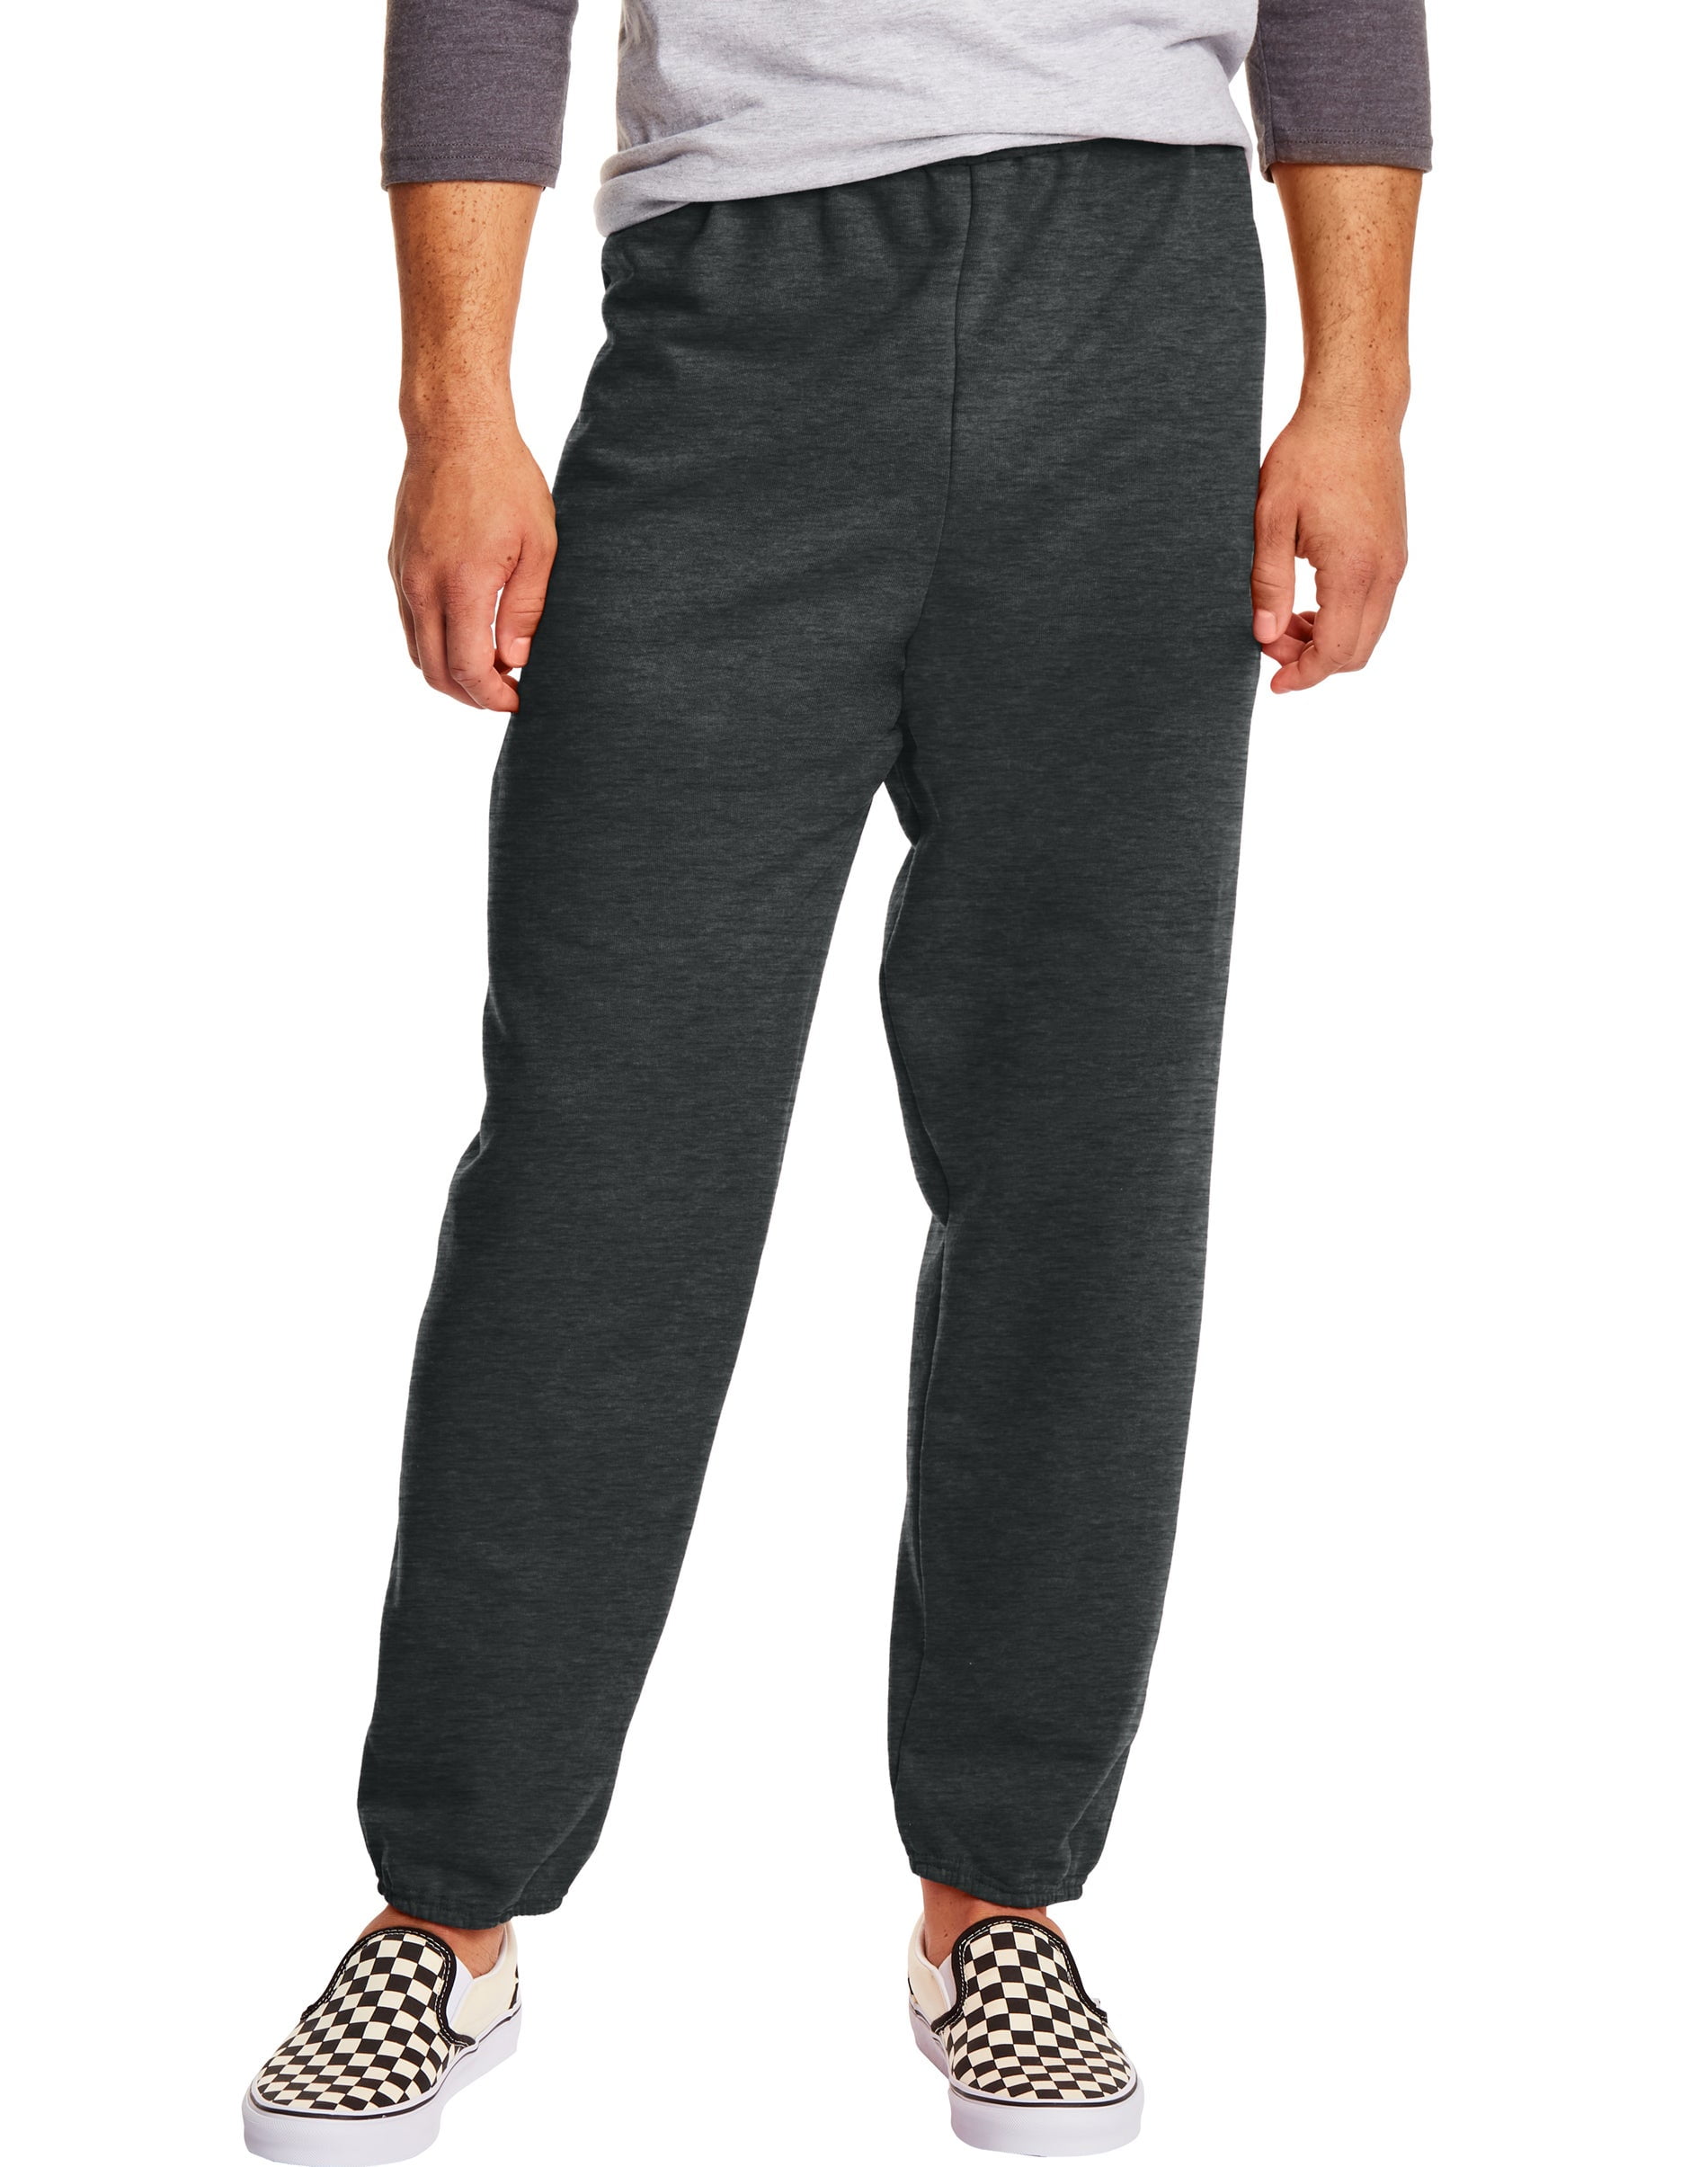 Hanes EcoSmart Fleece Men's Sweatpants Value Pack (2-pack) Charcoal ...